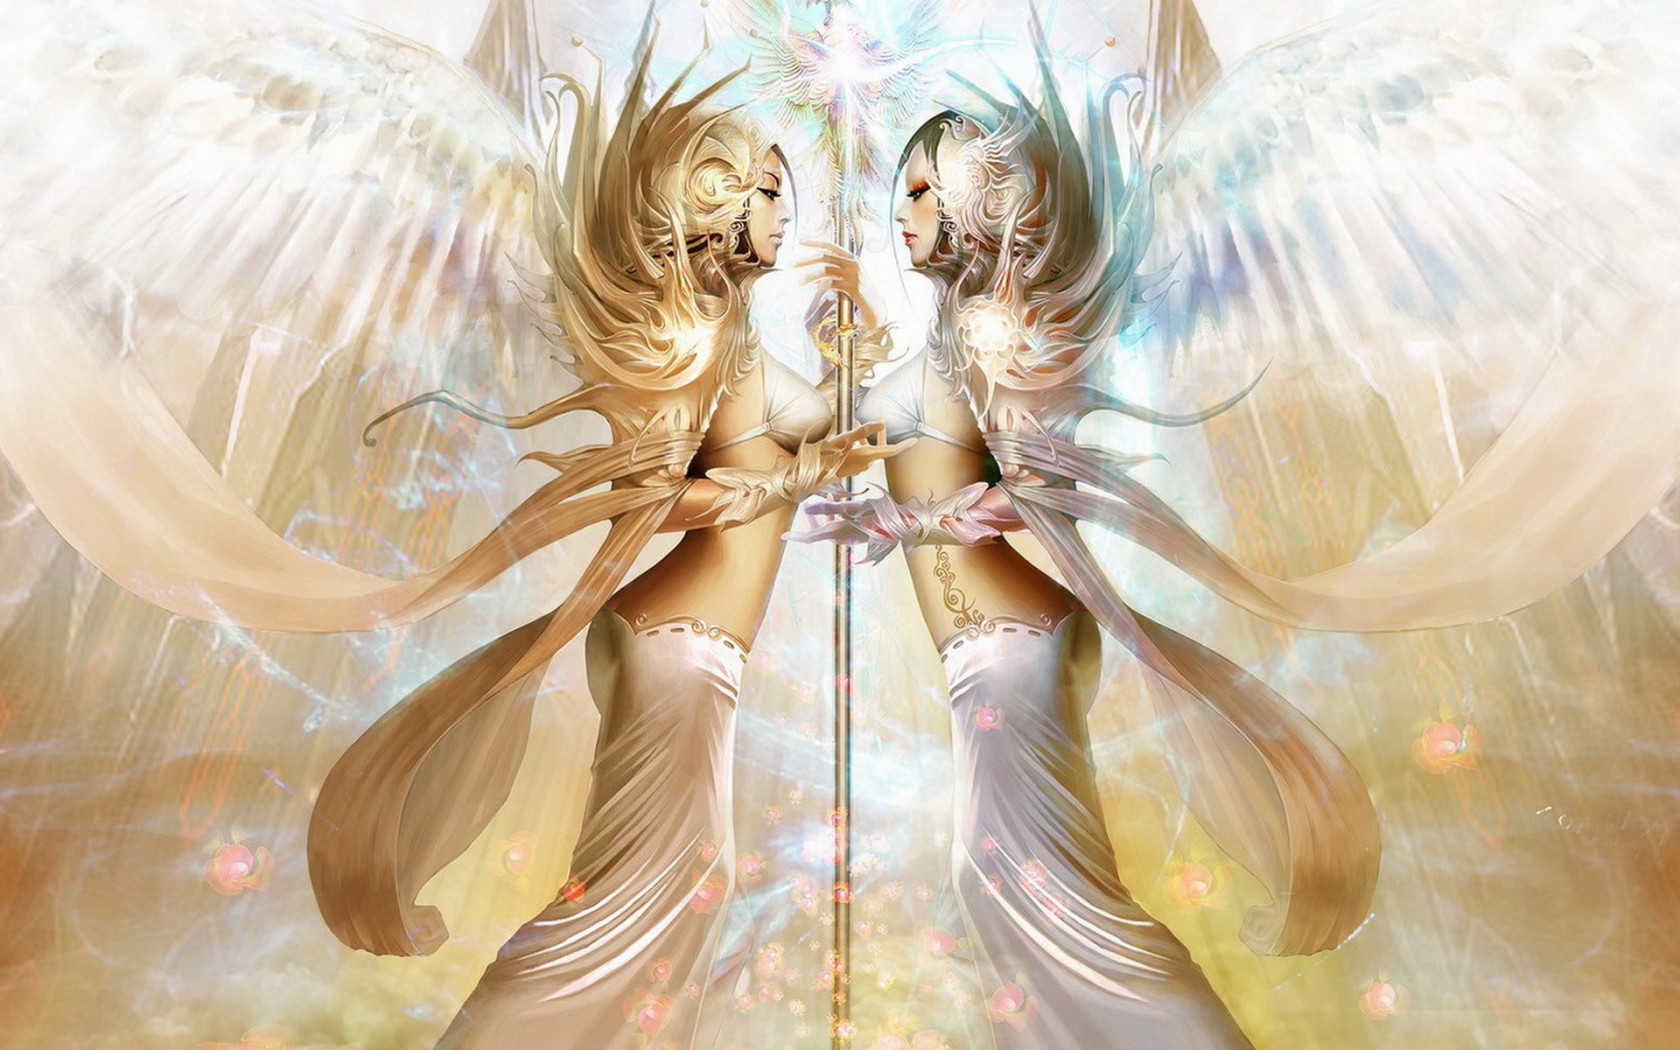 Charming angels